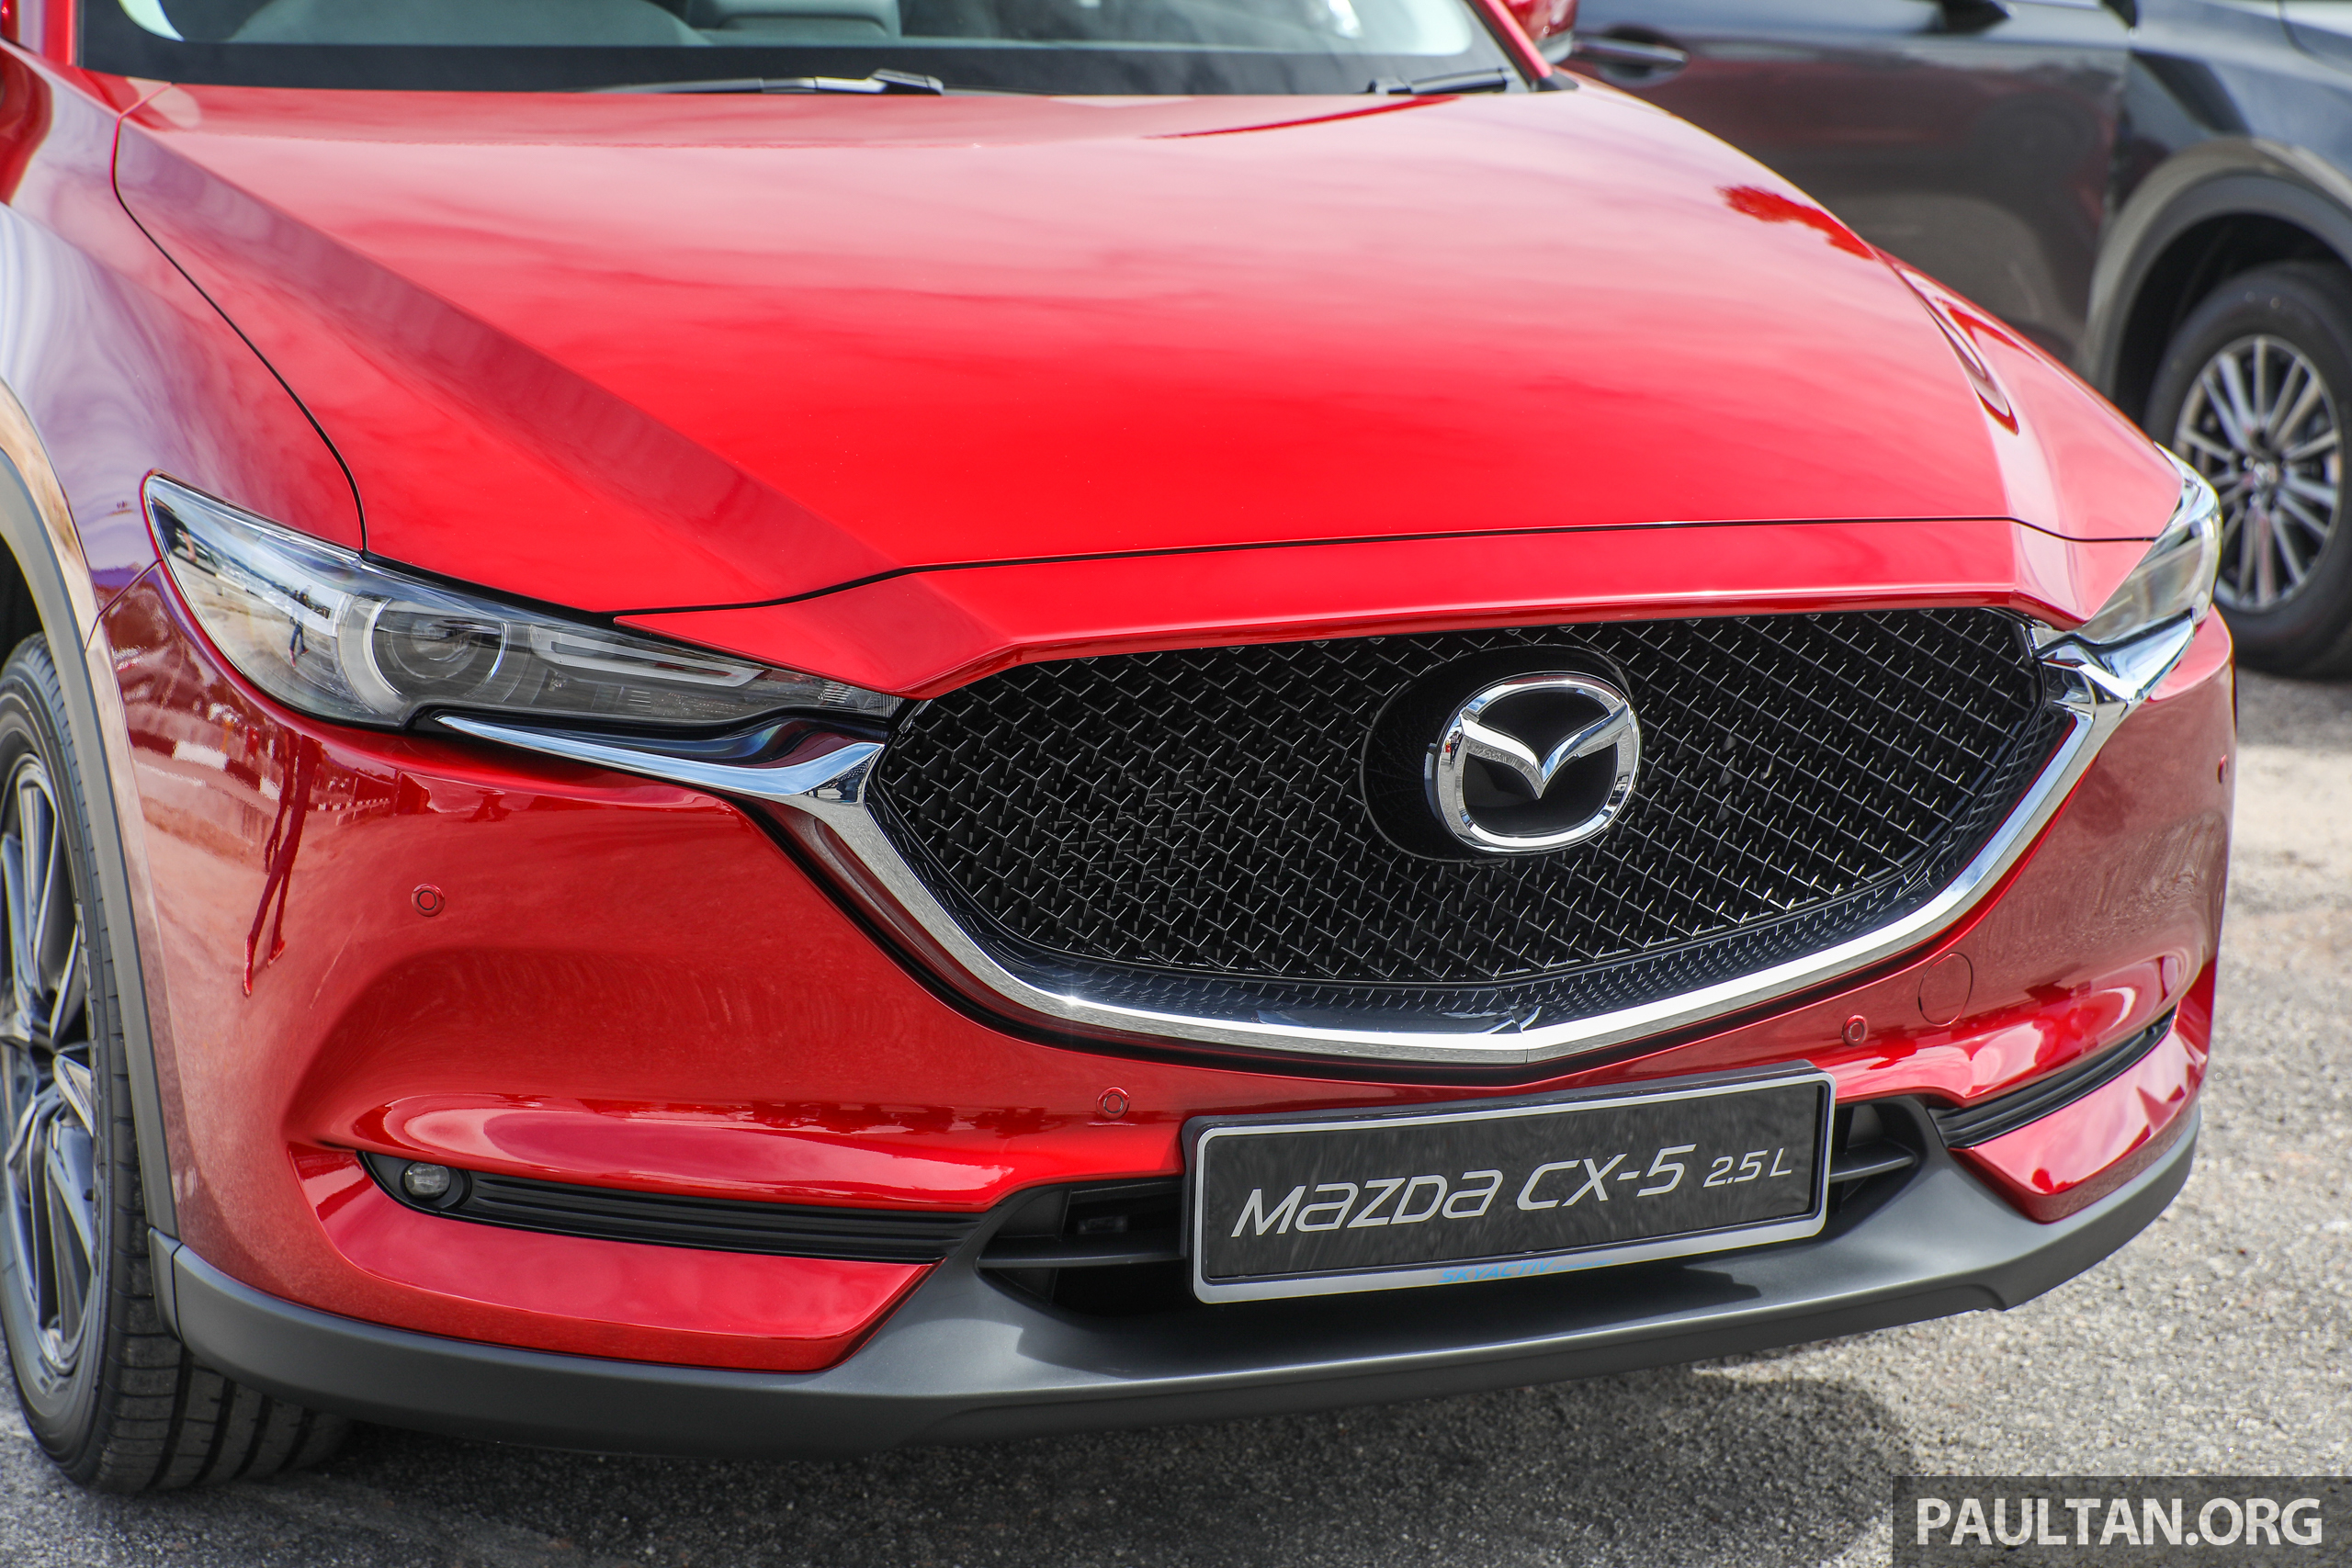 Mazda Cx5 25l 2017ext 8bm Paul Tans Automotive News